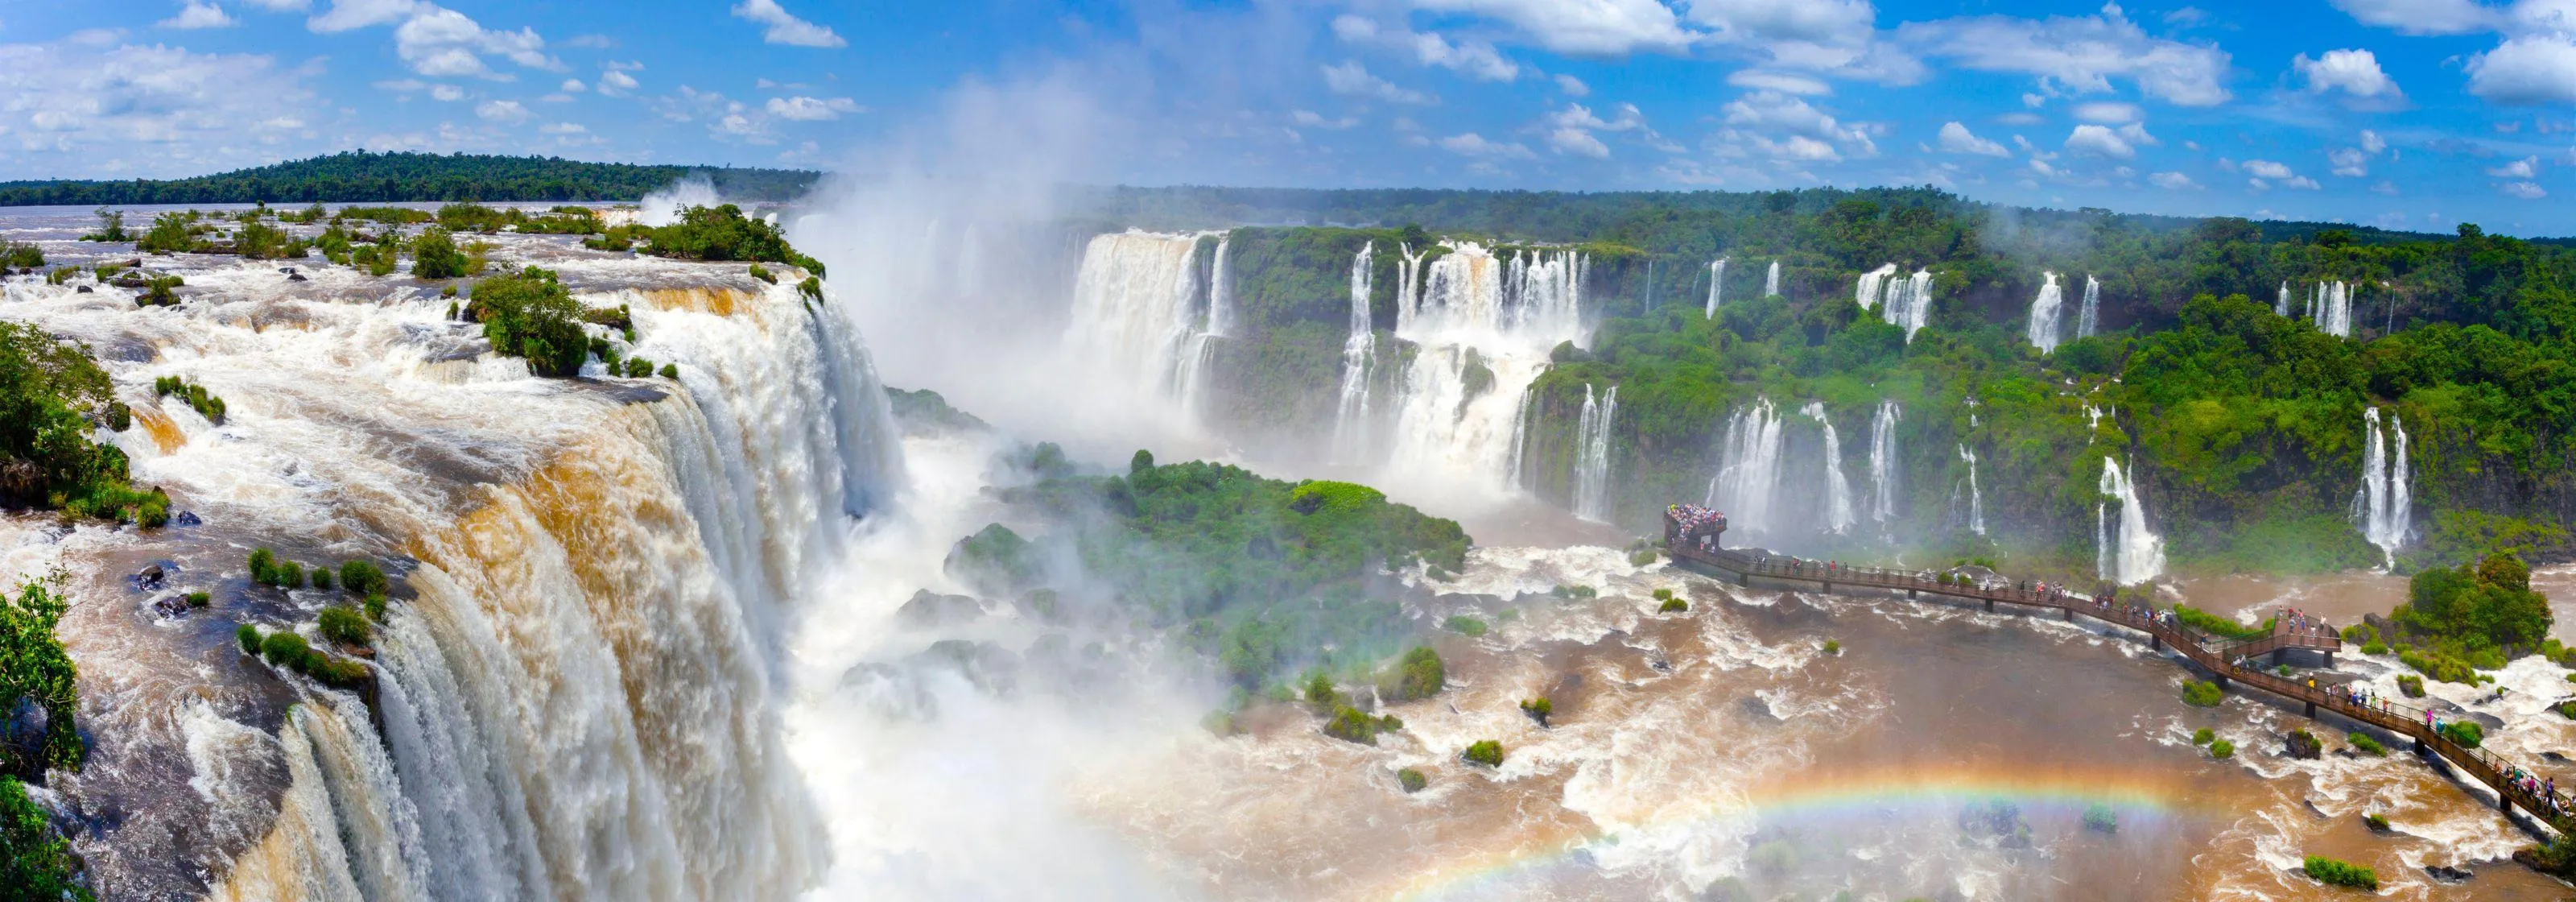 Foz do Iguacu | South Region, Brazil - Rated 5.6